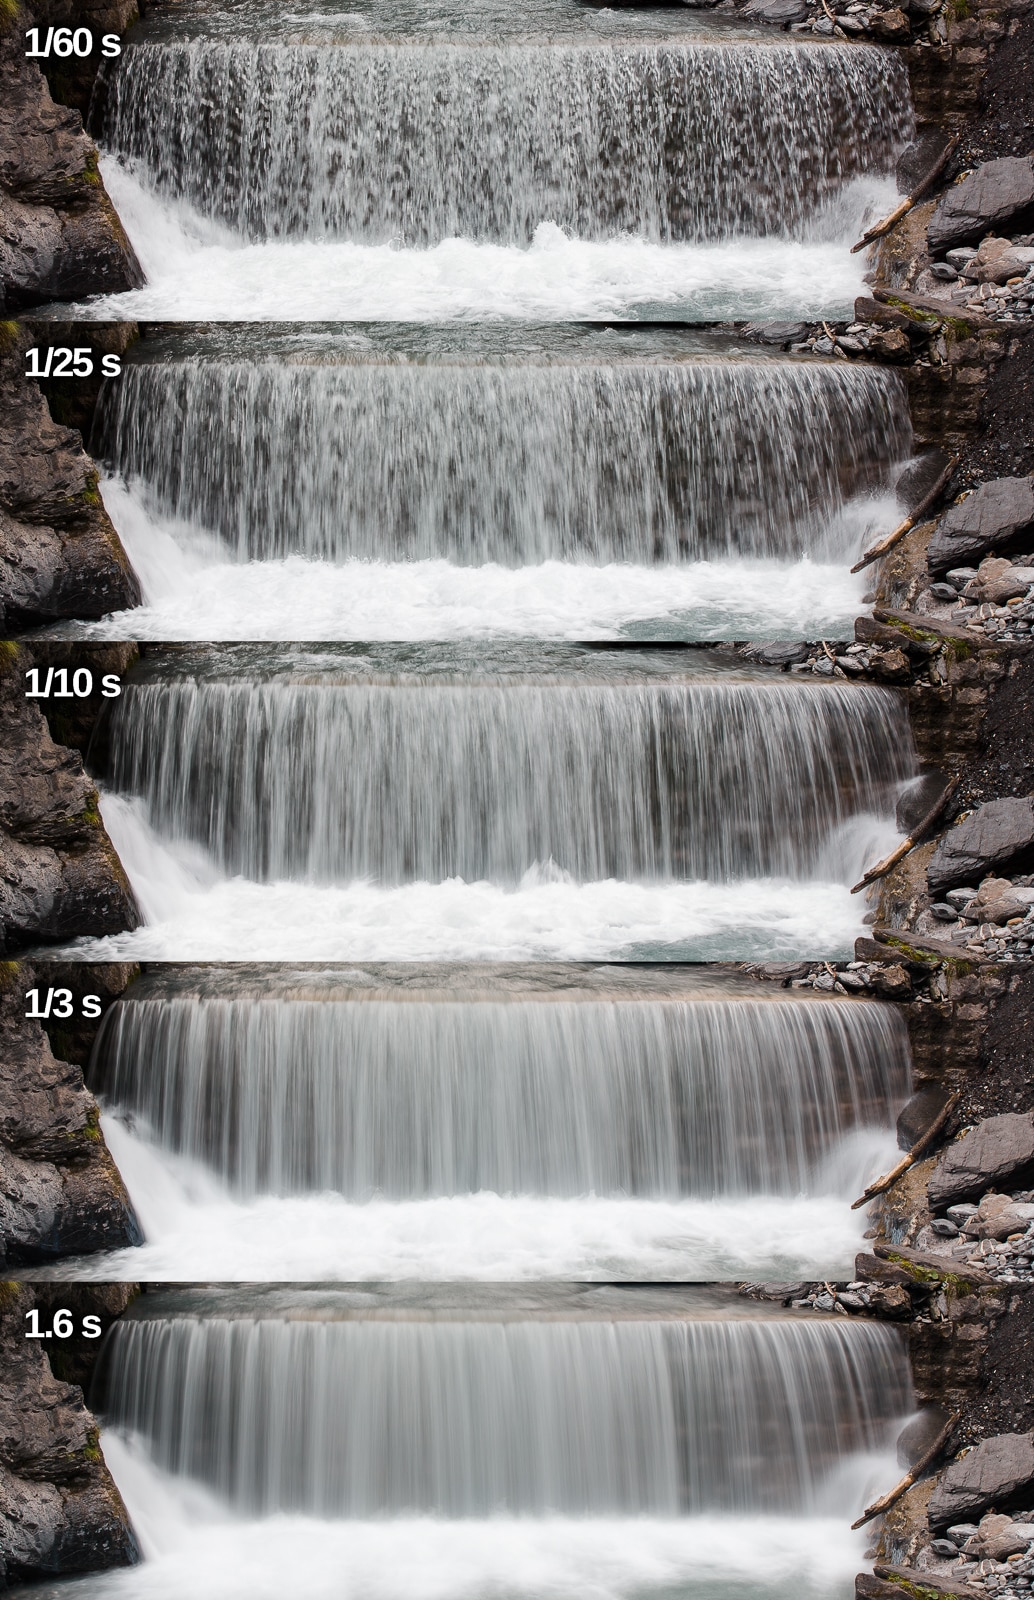 How to Photograph Waterfalls Using Basic Photo Equipment